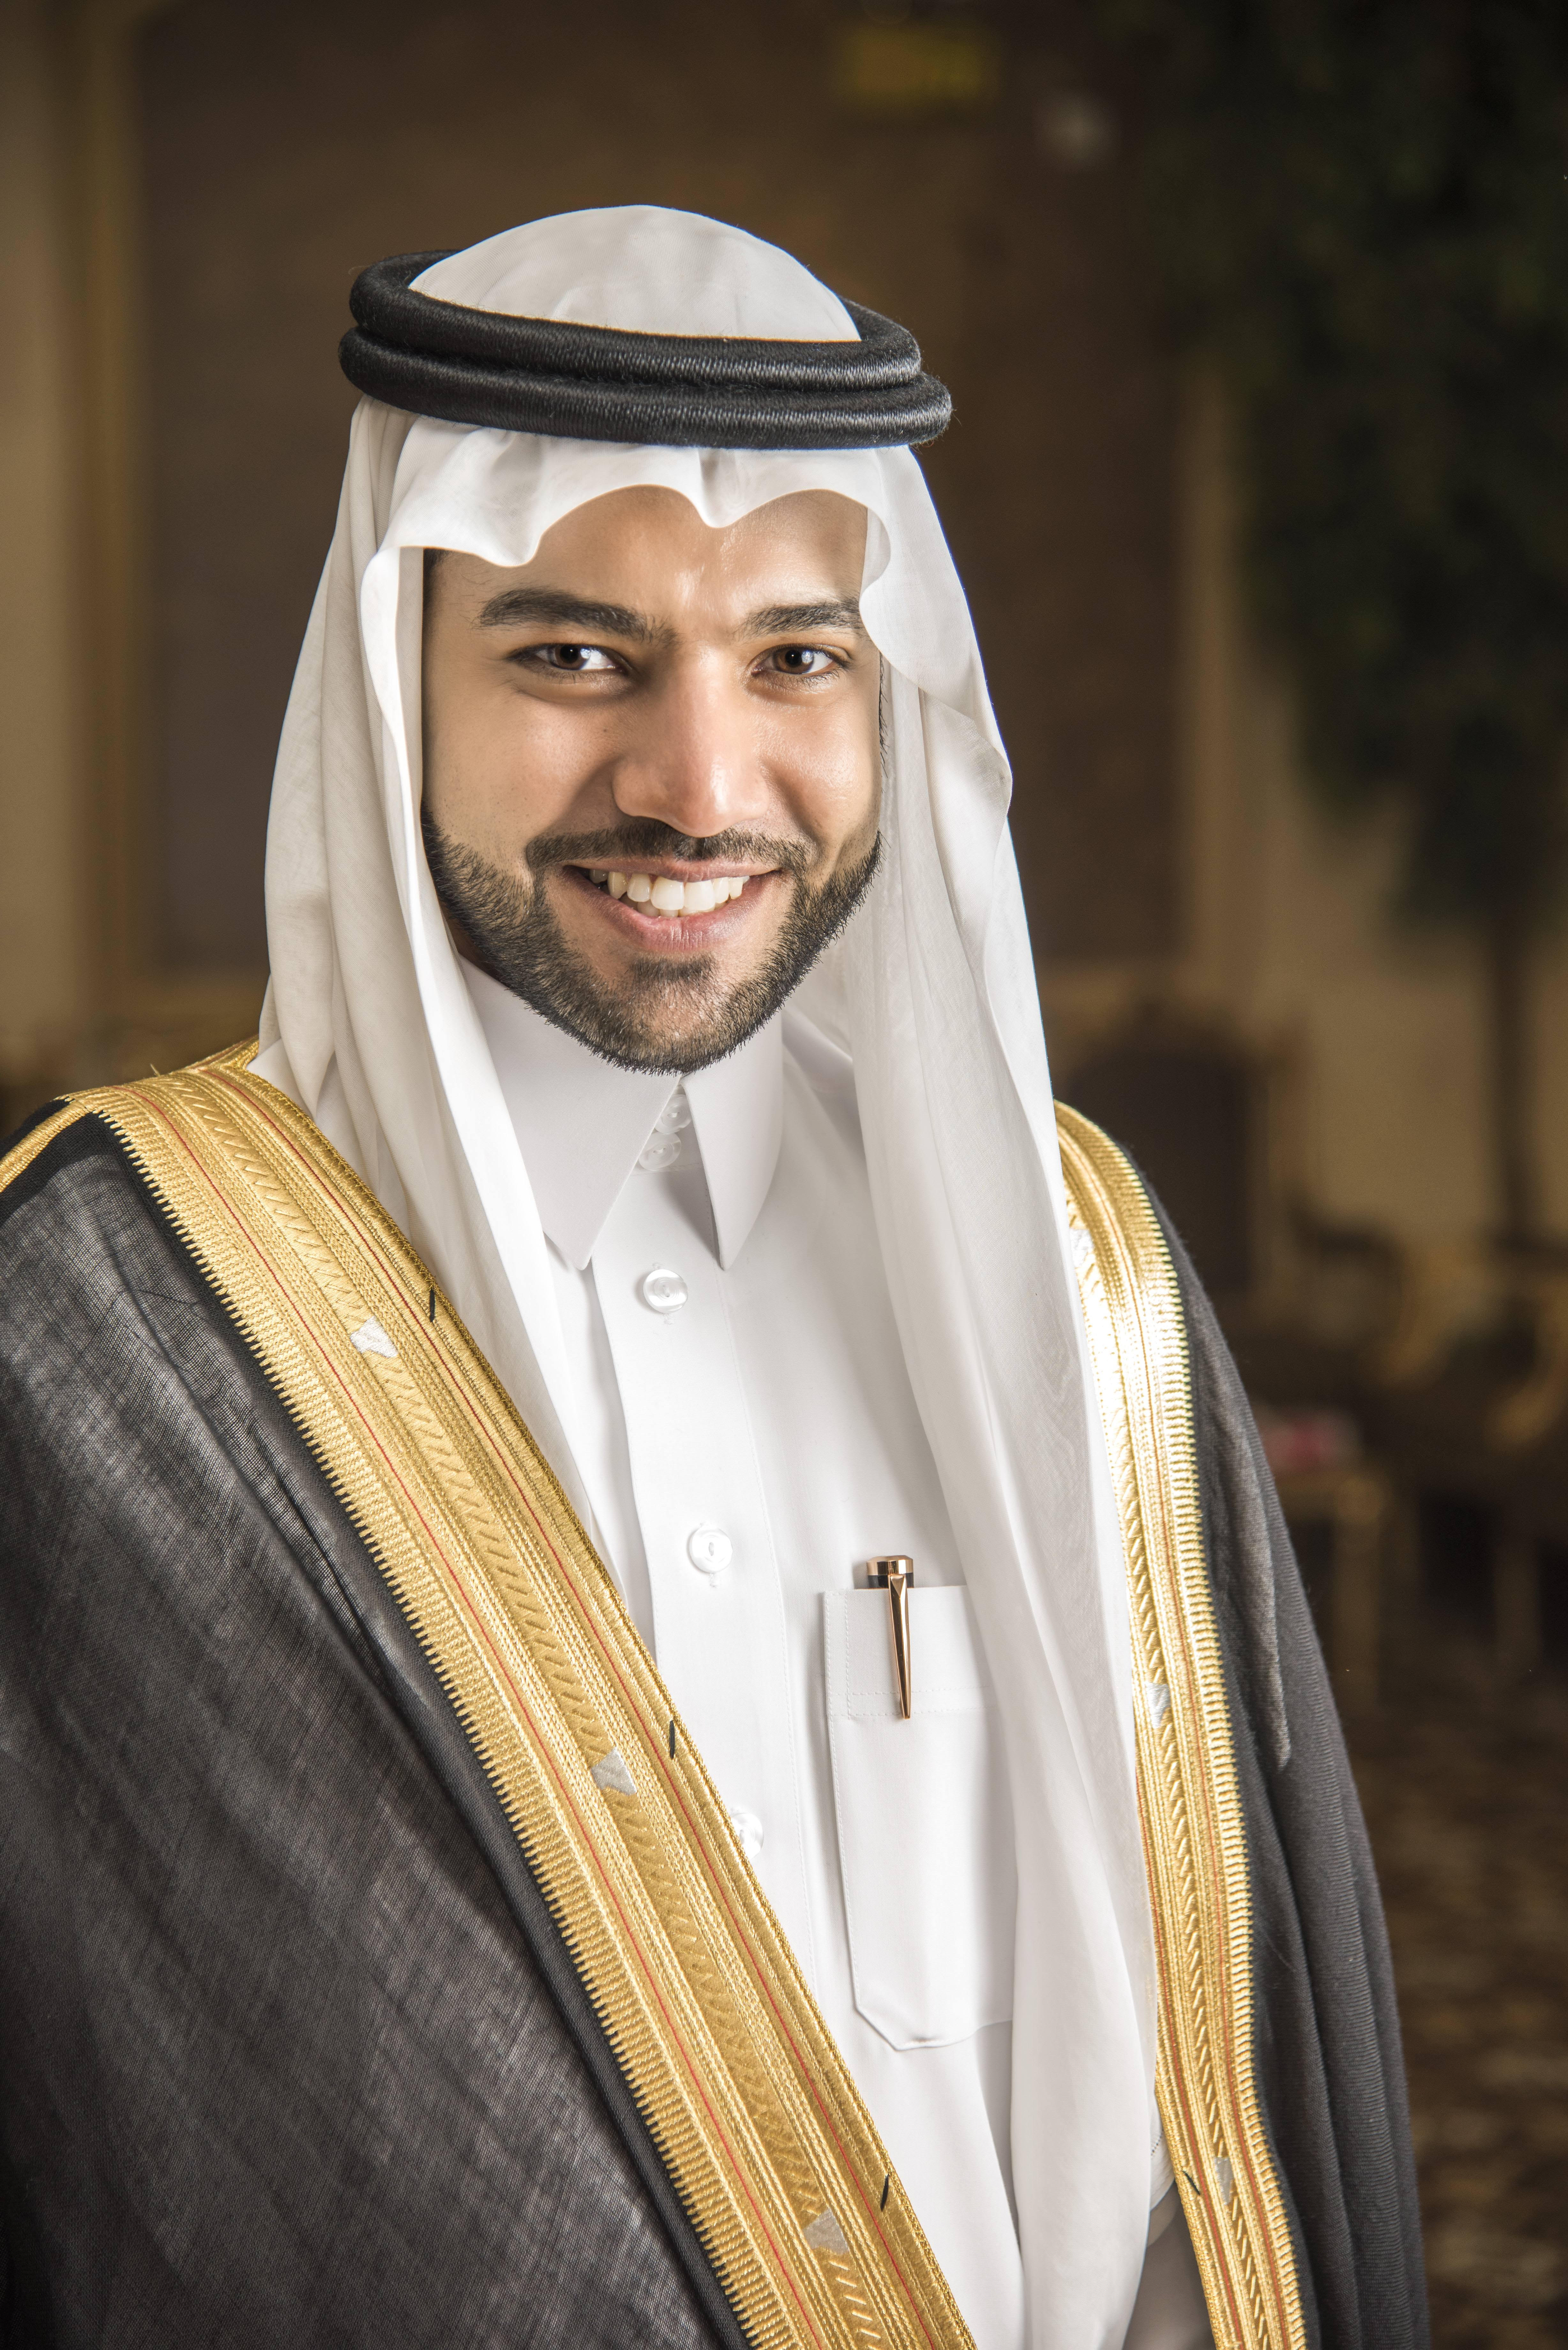 “المالكي” يحتفل بزواجه في الرياض